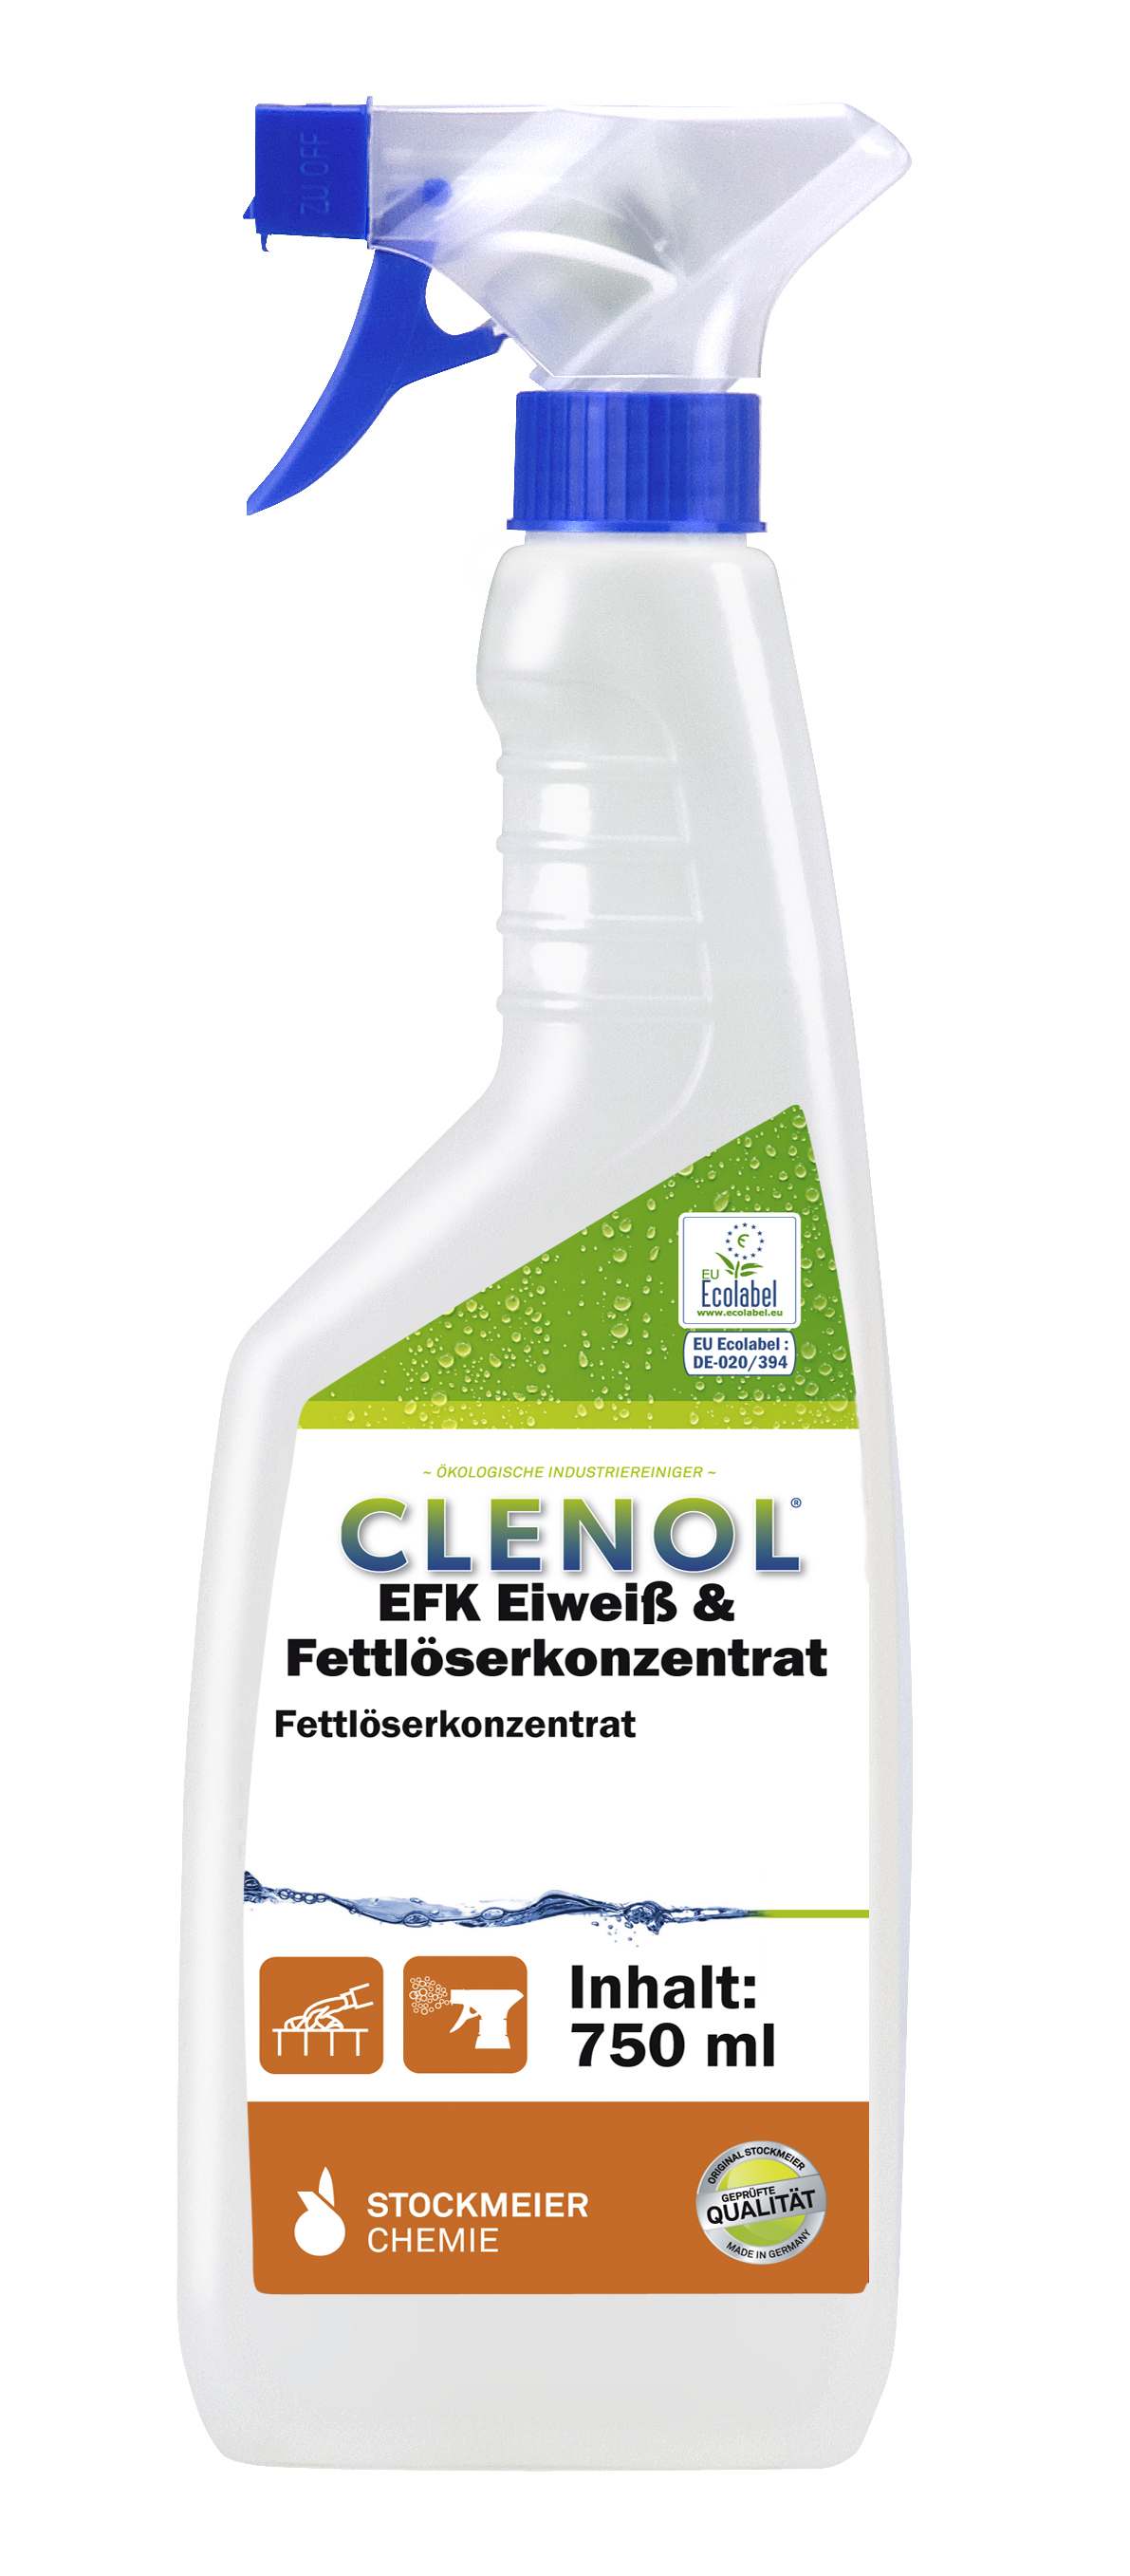 CLENOL EFK Eiweiß & Fettlöser-Konzentrat